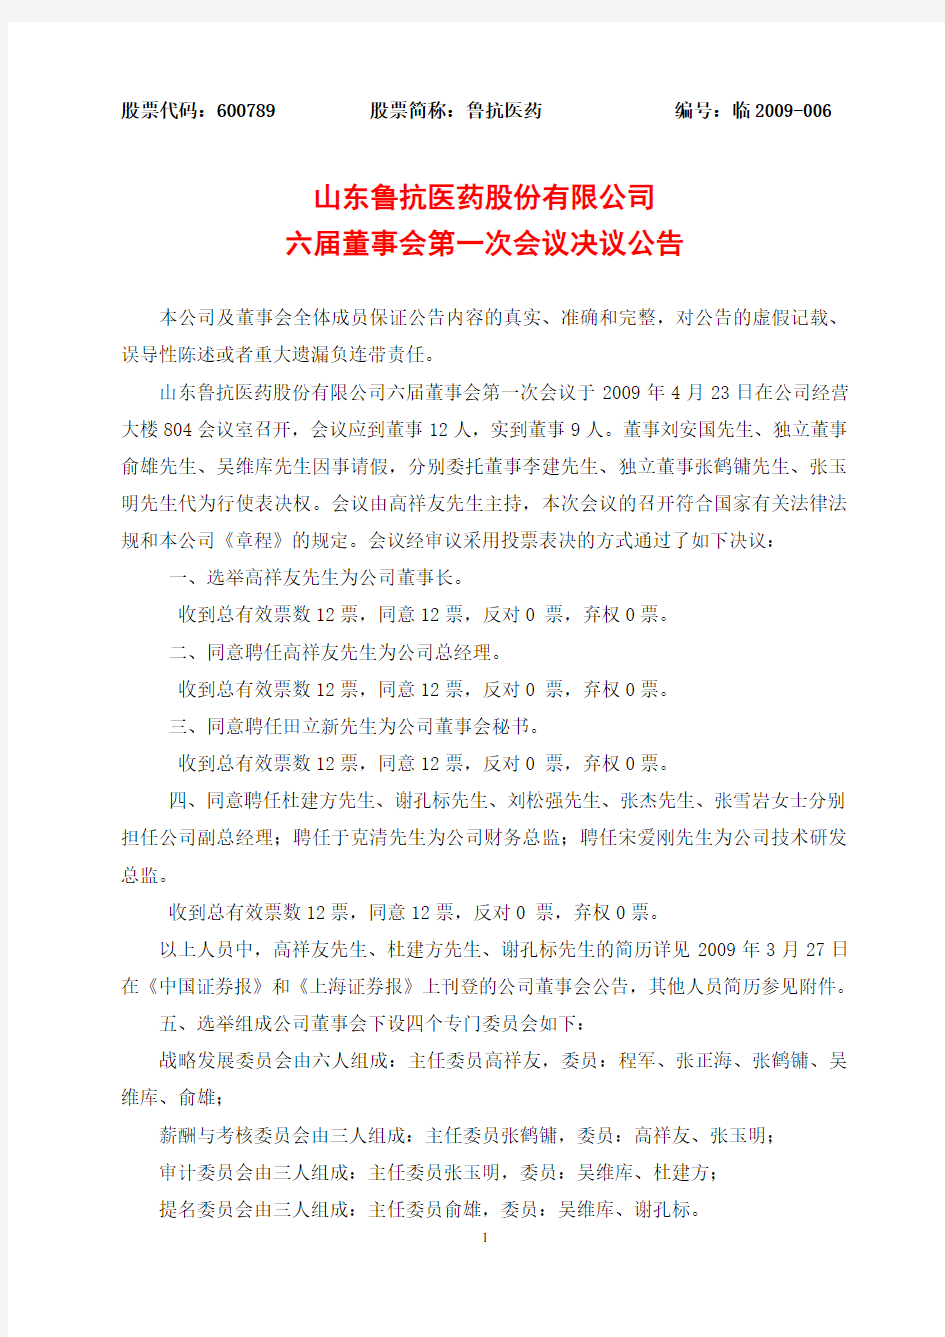 山东鲁抗医药股份有限公司六届董事会第一次会议决议公告